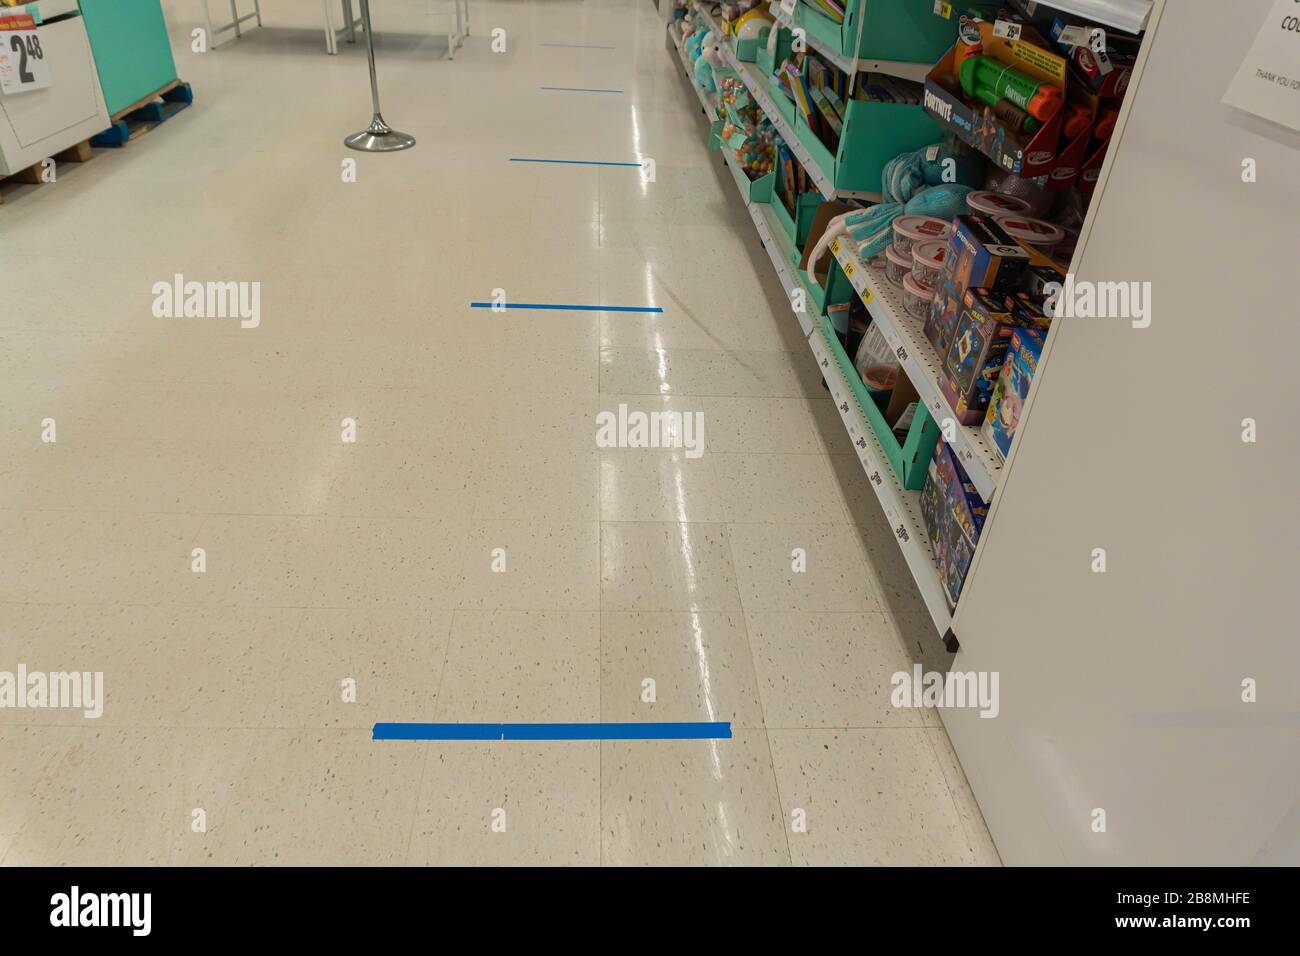 21 marzo 2020 - Calgary, Alberta Canada - linee al checkout supermercato per far emergere le distanze sociali durante la pandemia Foto Stock